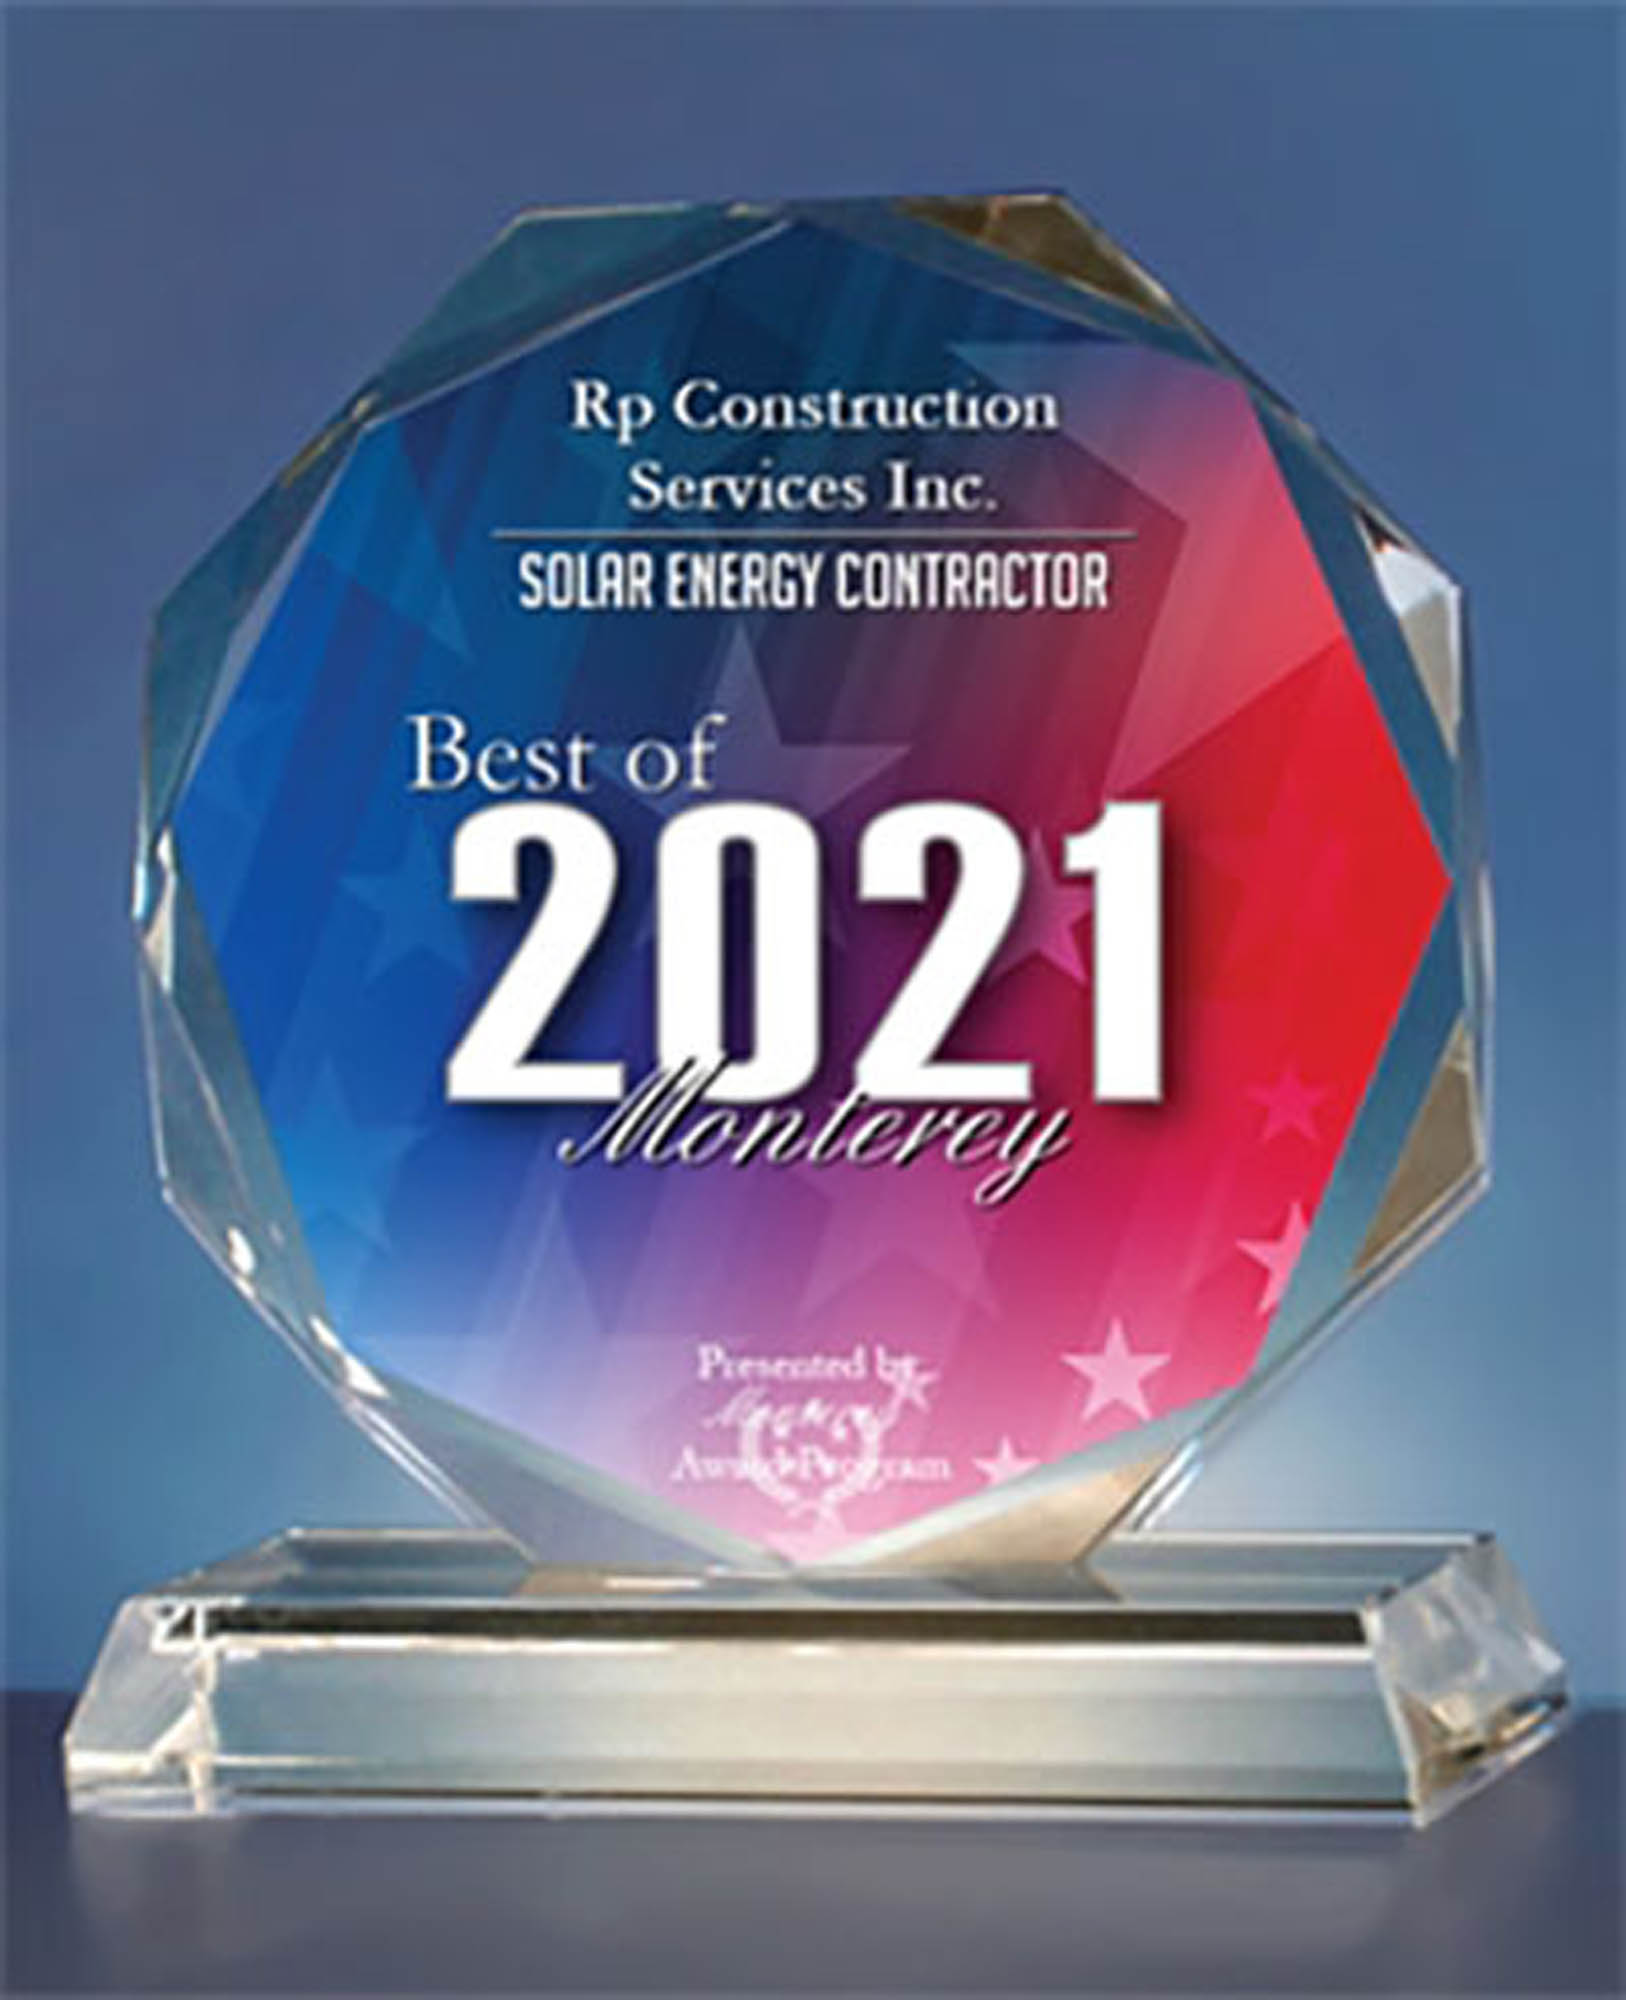 RPCS Best of 2021 Monterey Award